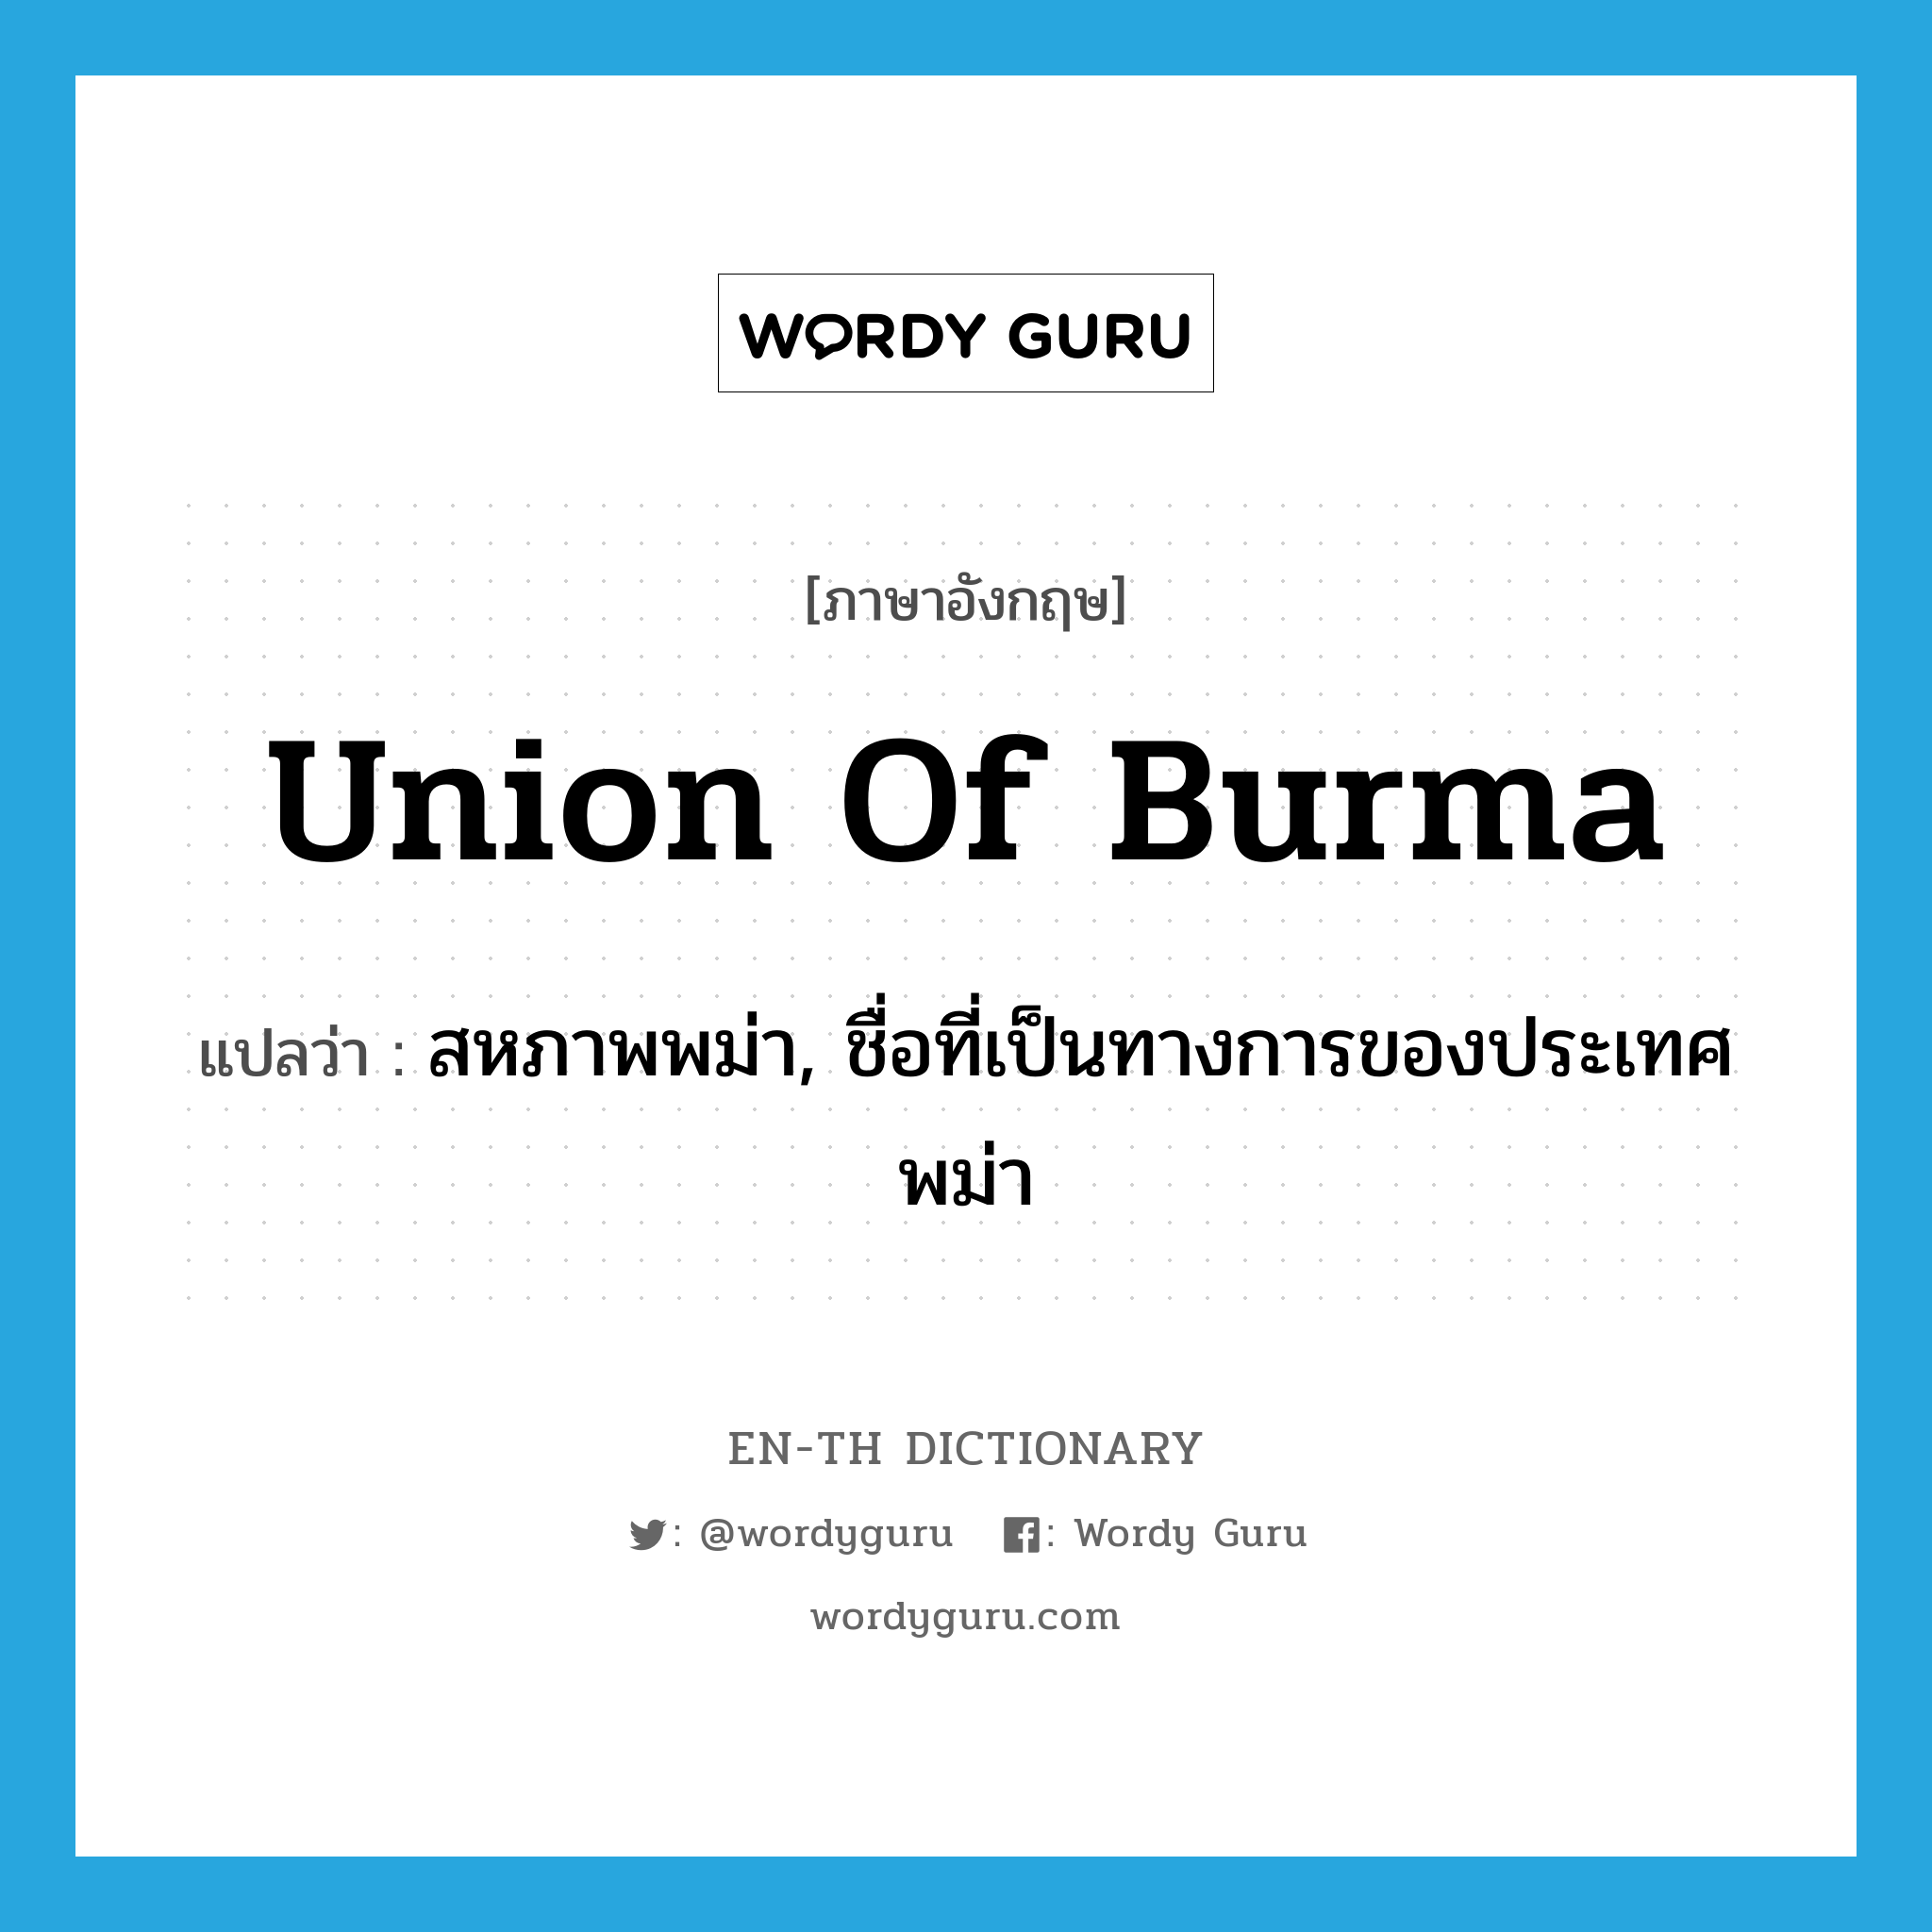 สหภาพพม่า, ชื่อที่เป็นทางการของประเทศพม่า ภาษาอังกฤษ?, คำศัพท์ภาษาอังกฤษ สหภาพพม่า, ชื่อที่เป็นทางการของประเทศพม่า แปลว่า Union of Burma ประเภท N หมวด N